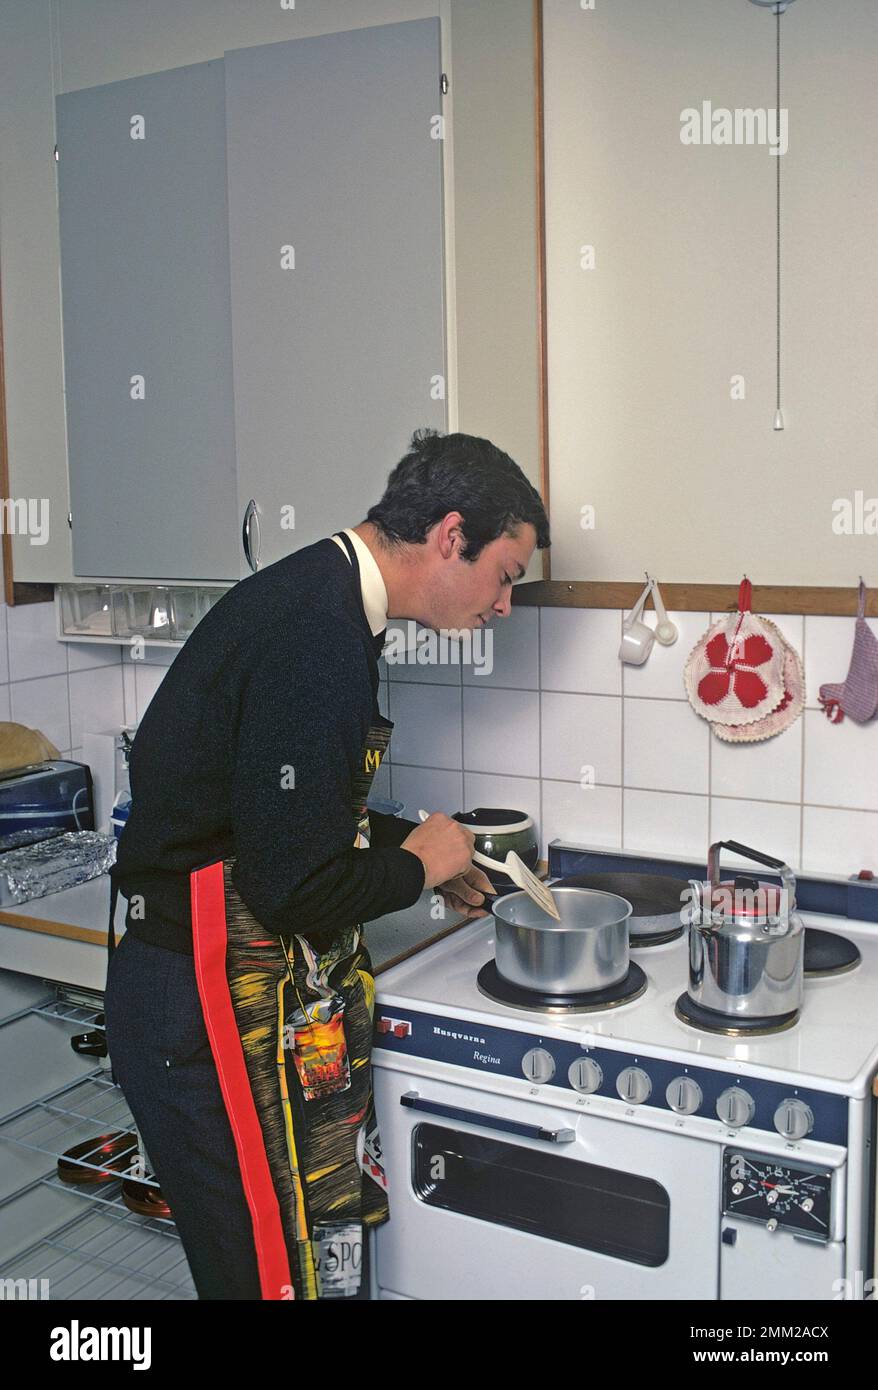 Carl XVI Gustaf, König von Schweden. Geboren am 30. april 1946. Als Kronprinz in seiner Studentenwohnung und Küche, während er in Uppsala studiert. Er steht neben dem Küchenherd und trägt eine Schürze und gibt vor, etwas zu kochen, aber es gibt kein Essen im Kochtopf. 1968 Stockfoto